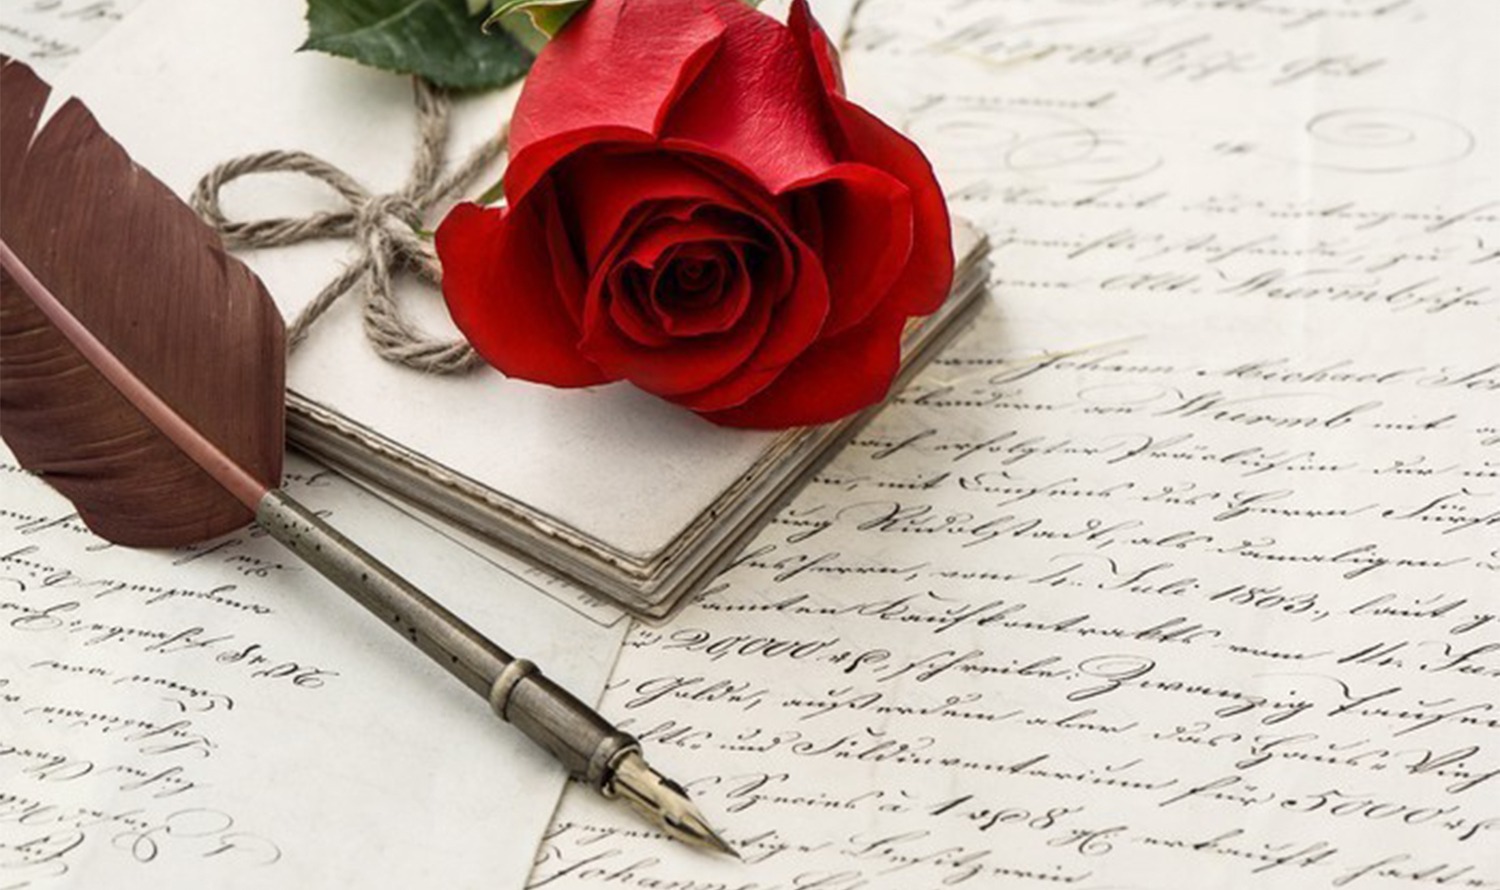 En la imagen aparecen una rosa roja, una antigua pluma estilográfica y varias cartas escritas a mano, creando una atmósfera nostálgica.